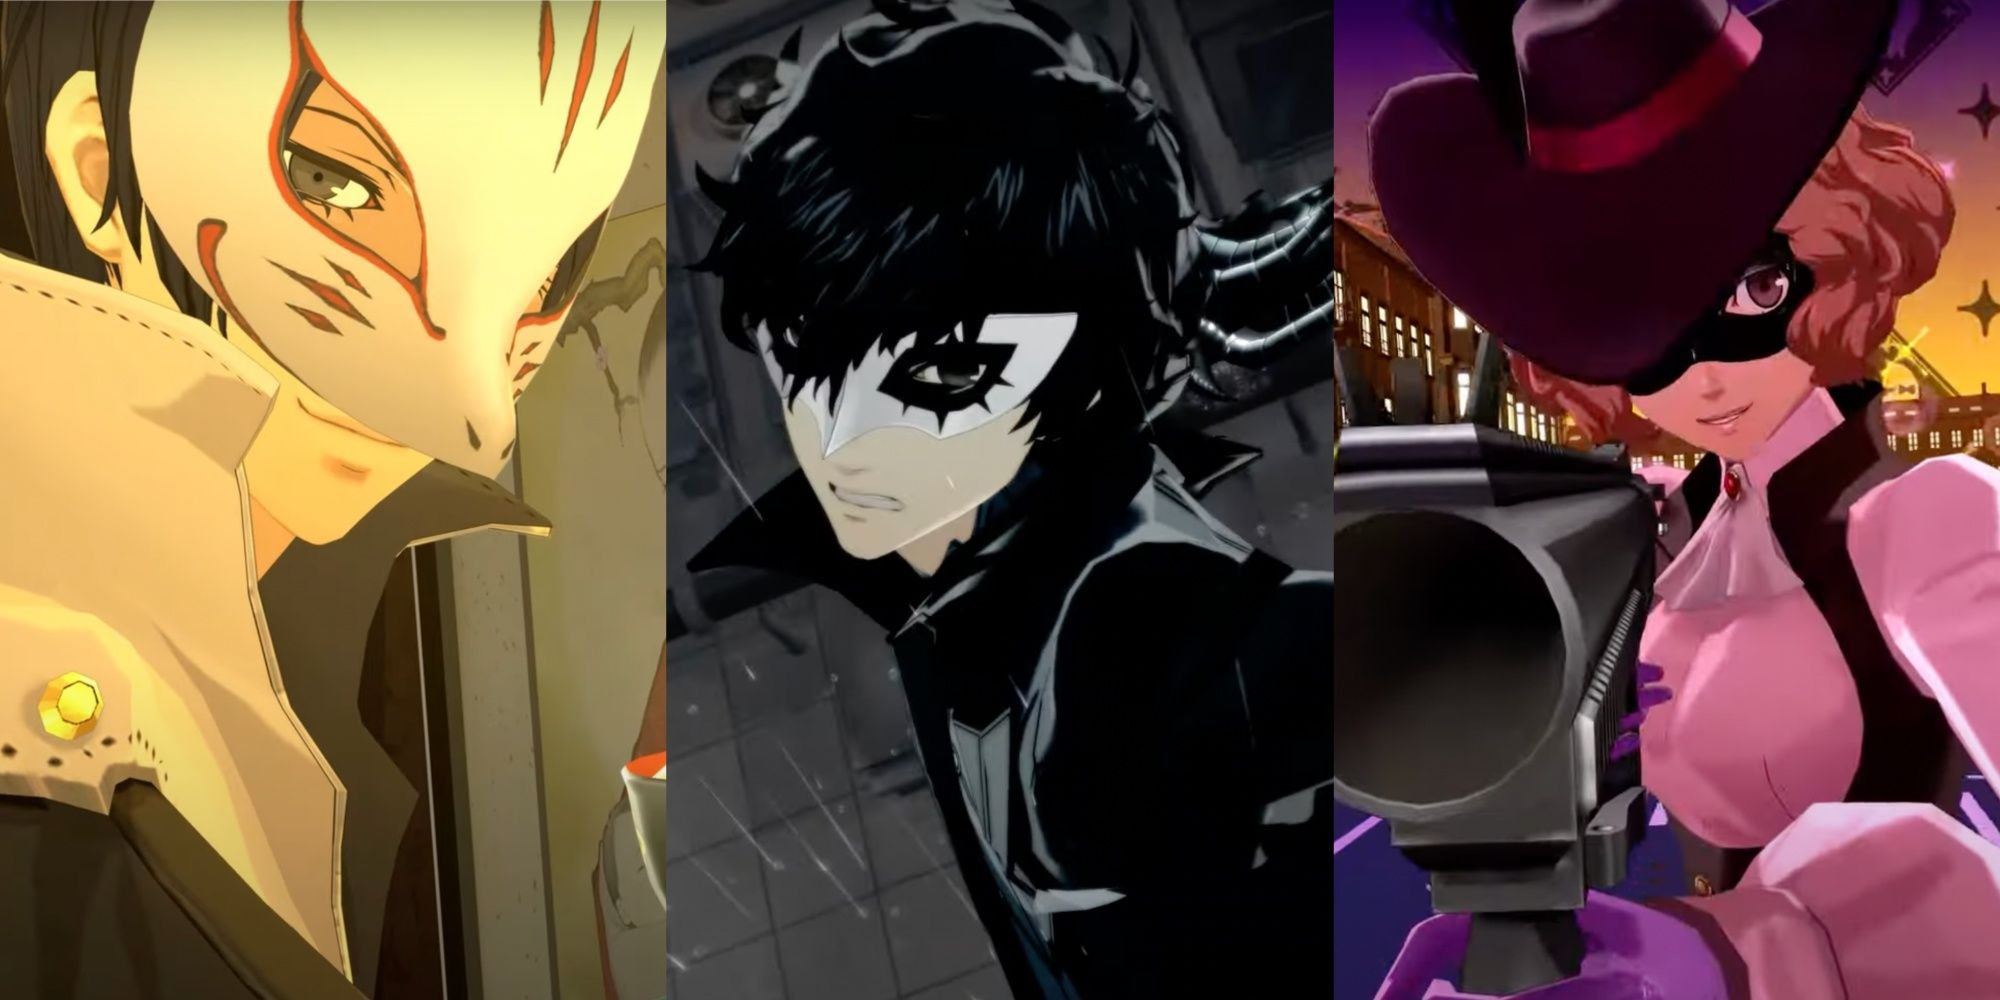 Yusuke, Joker, and Haru from Persona 5